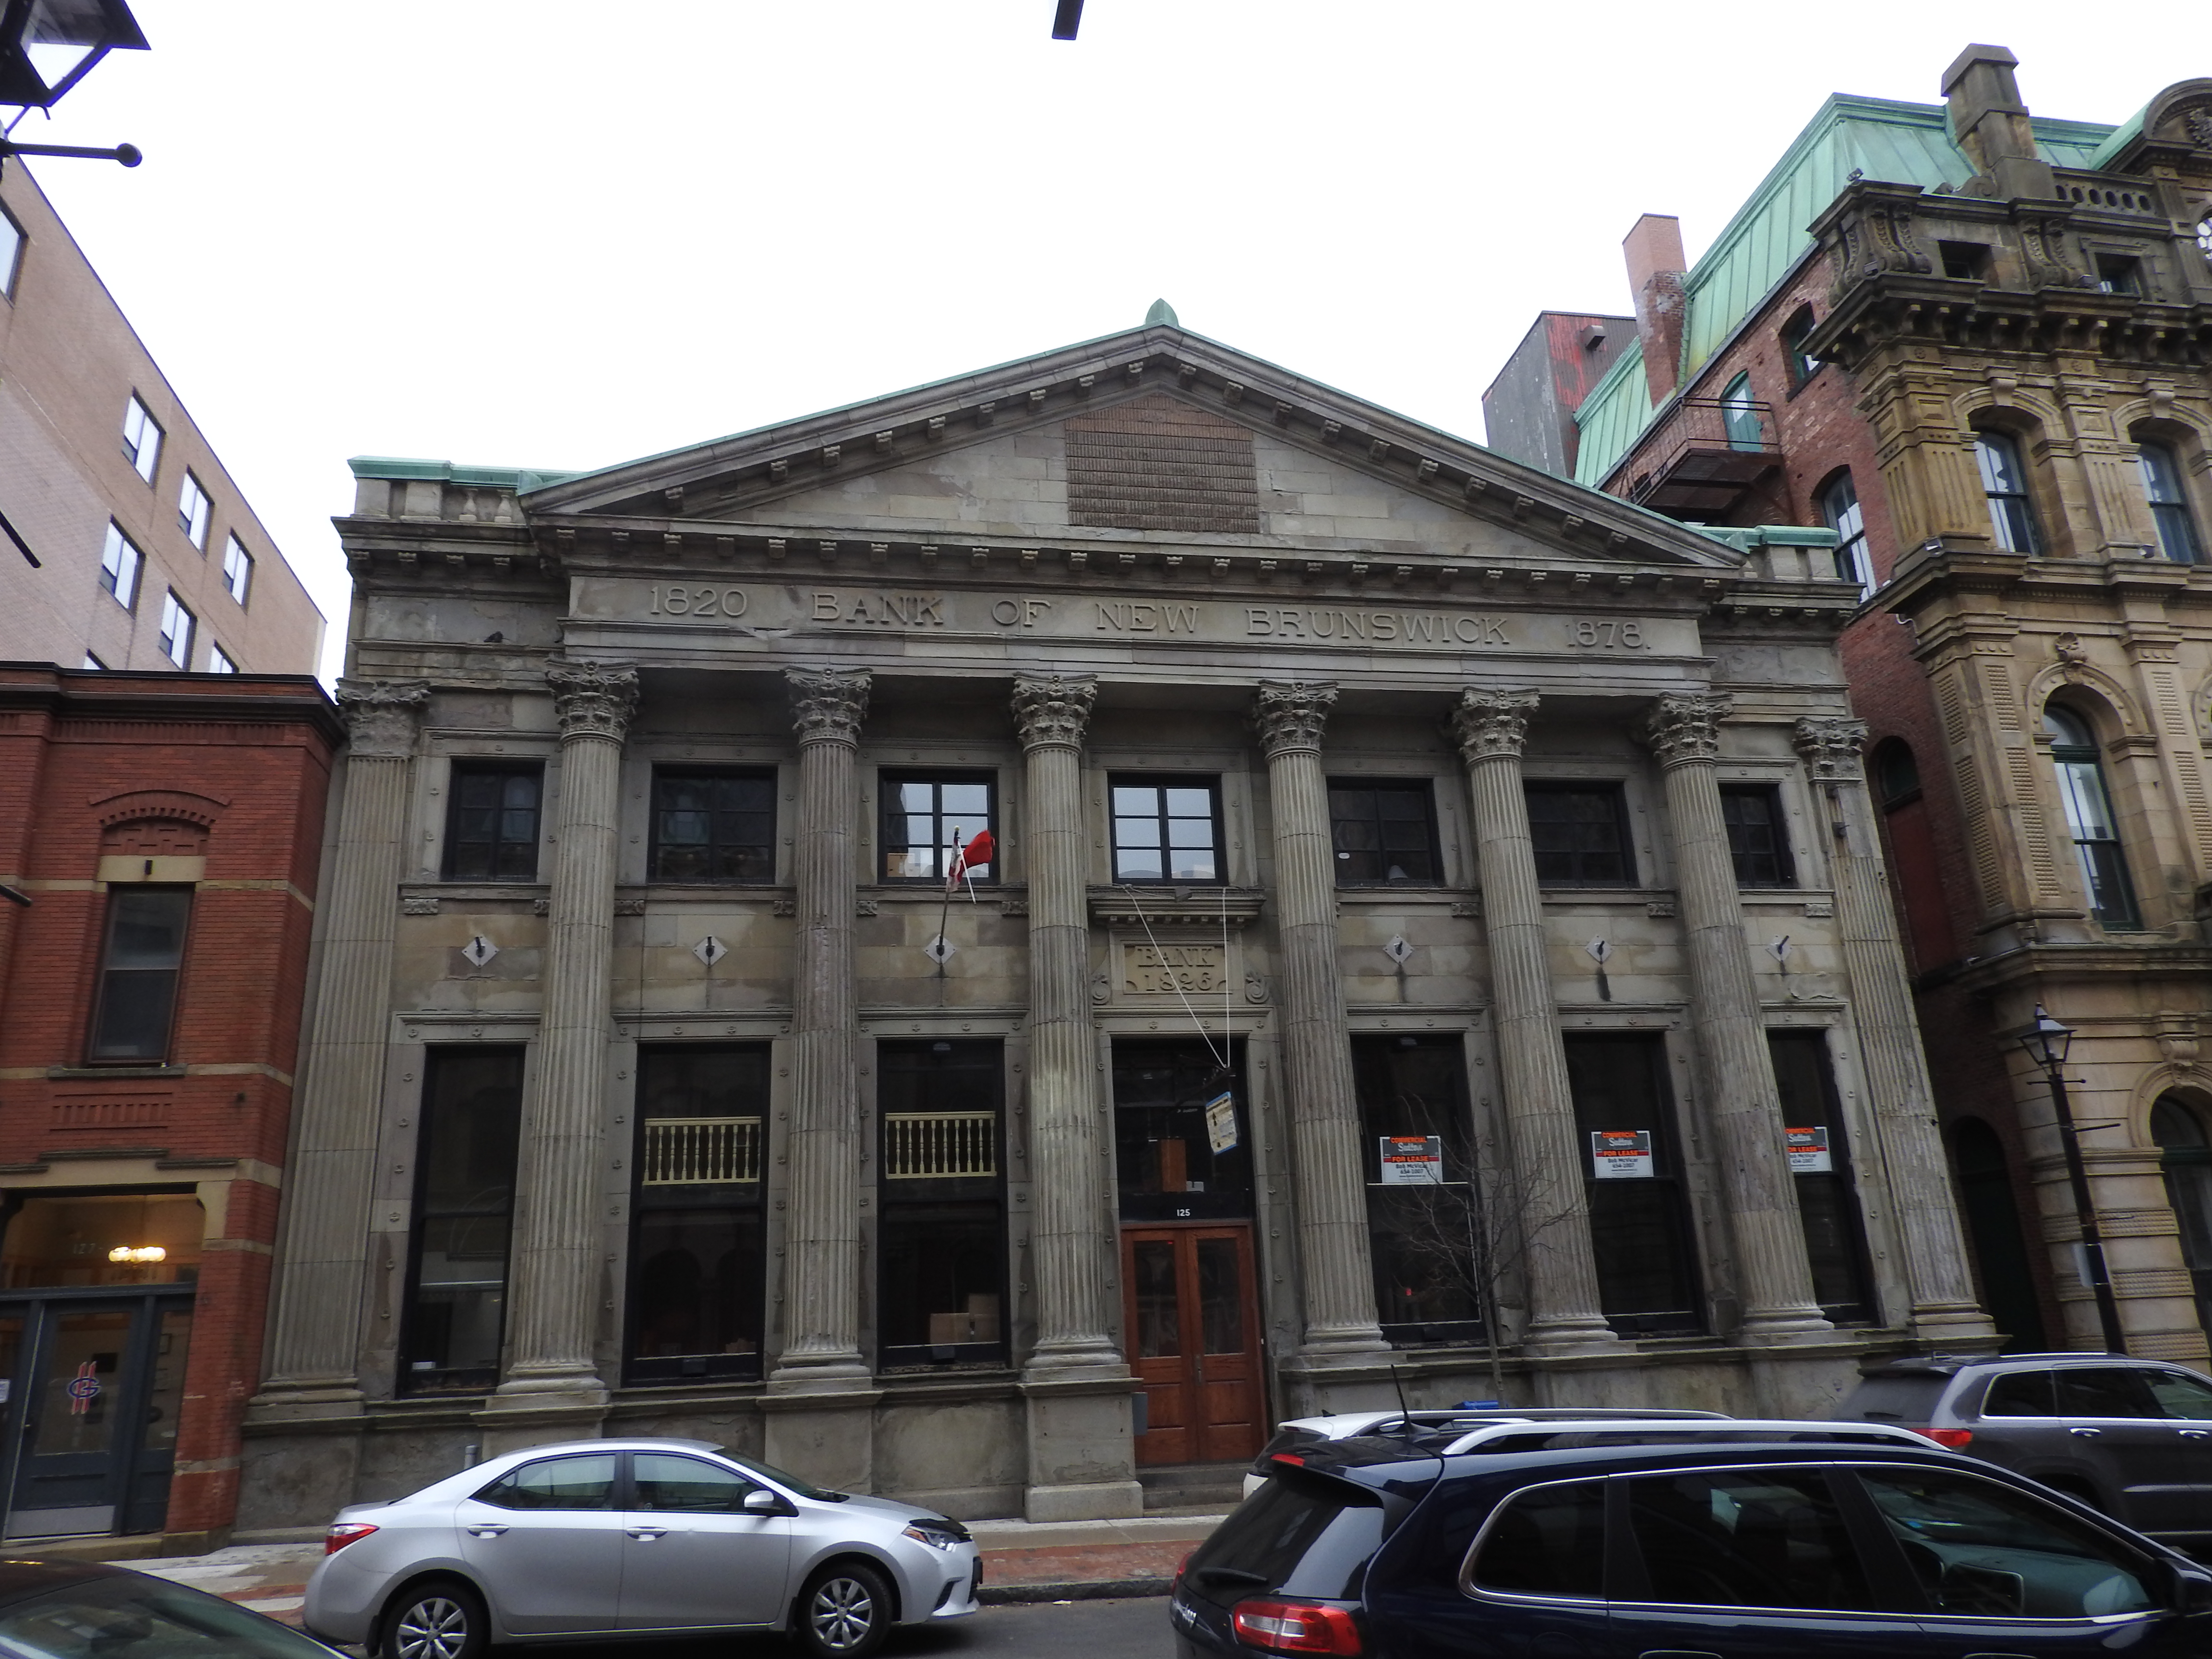 Bank of New Brunswick NHS